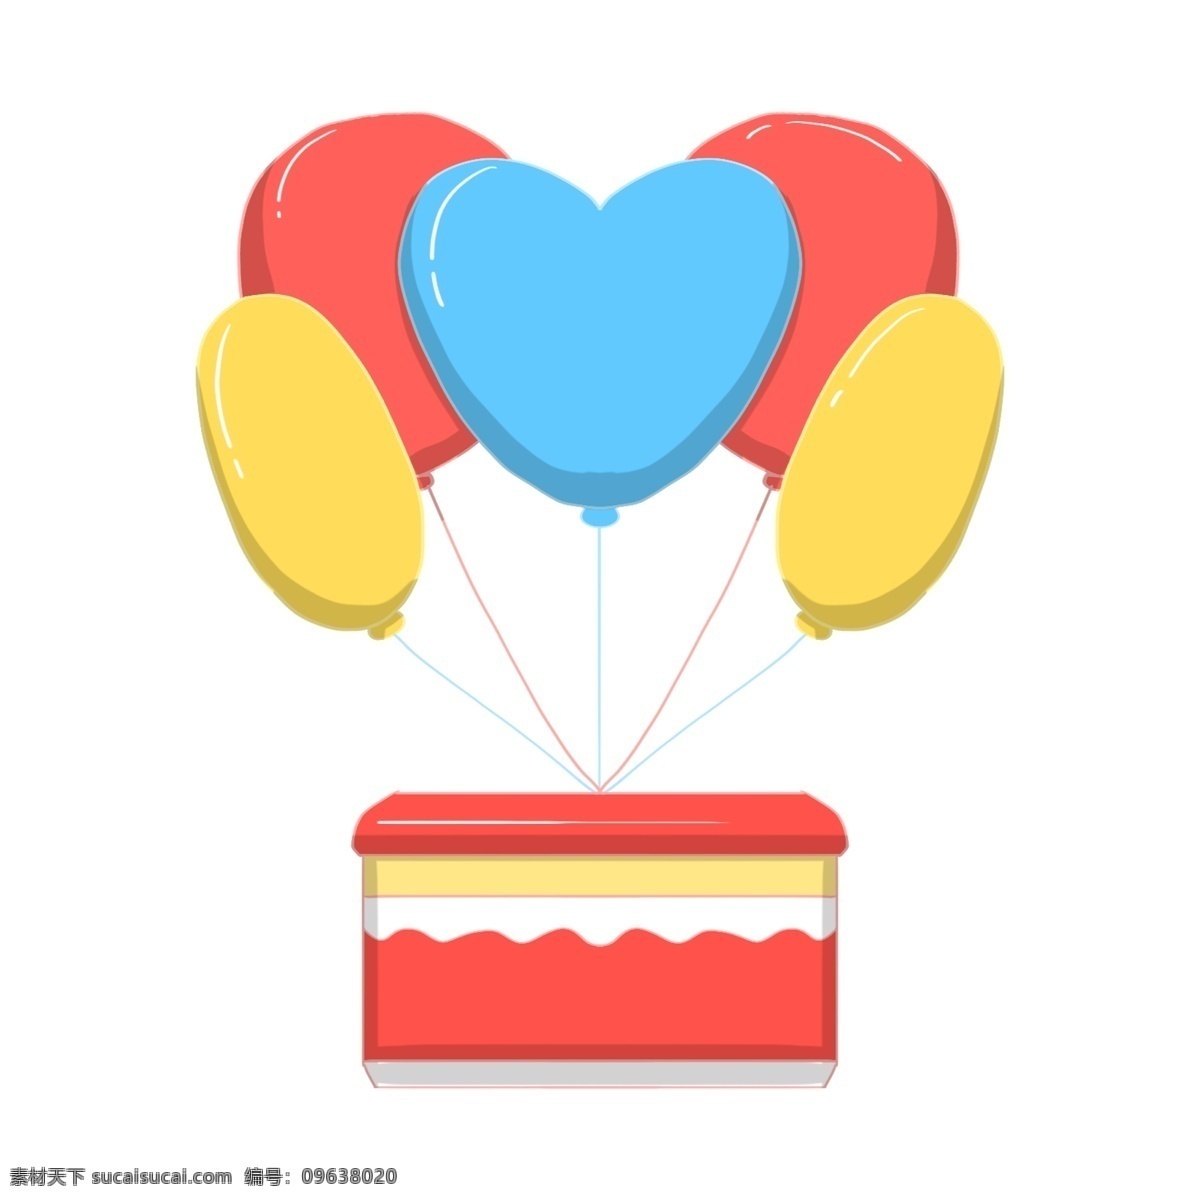 彩色 气球 礼物 插画 手绘气球礼物 卡通气球礼物 气球礼物插画 红色的礼盒 浪漫气球礼物